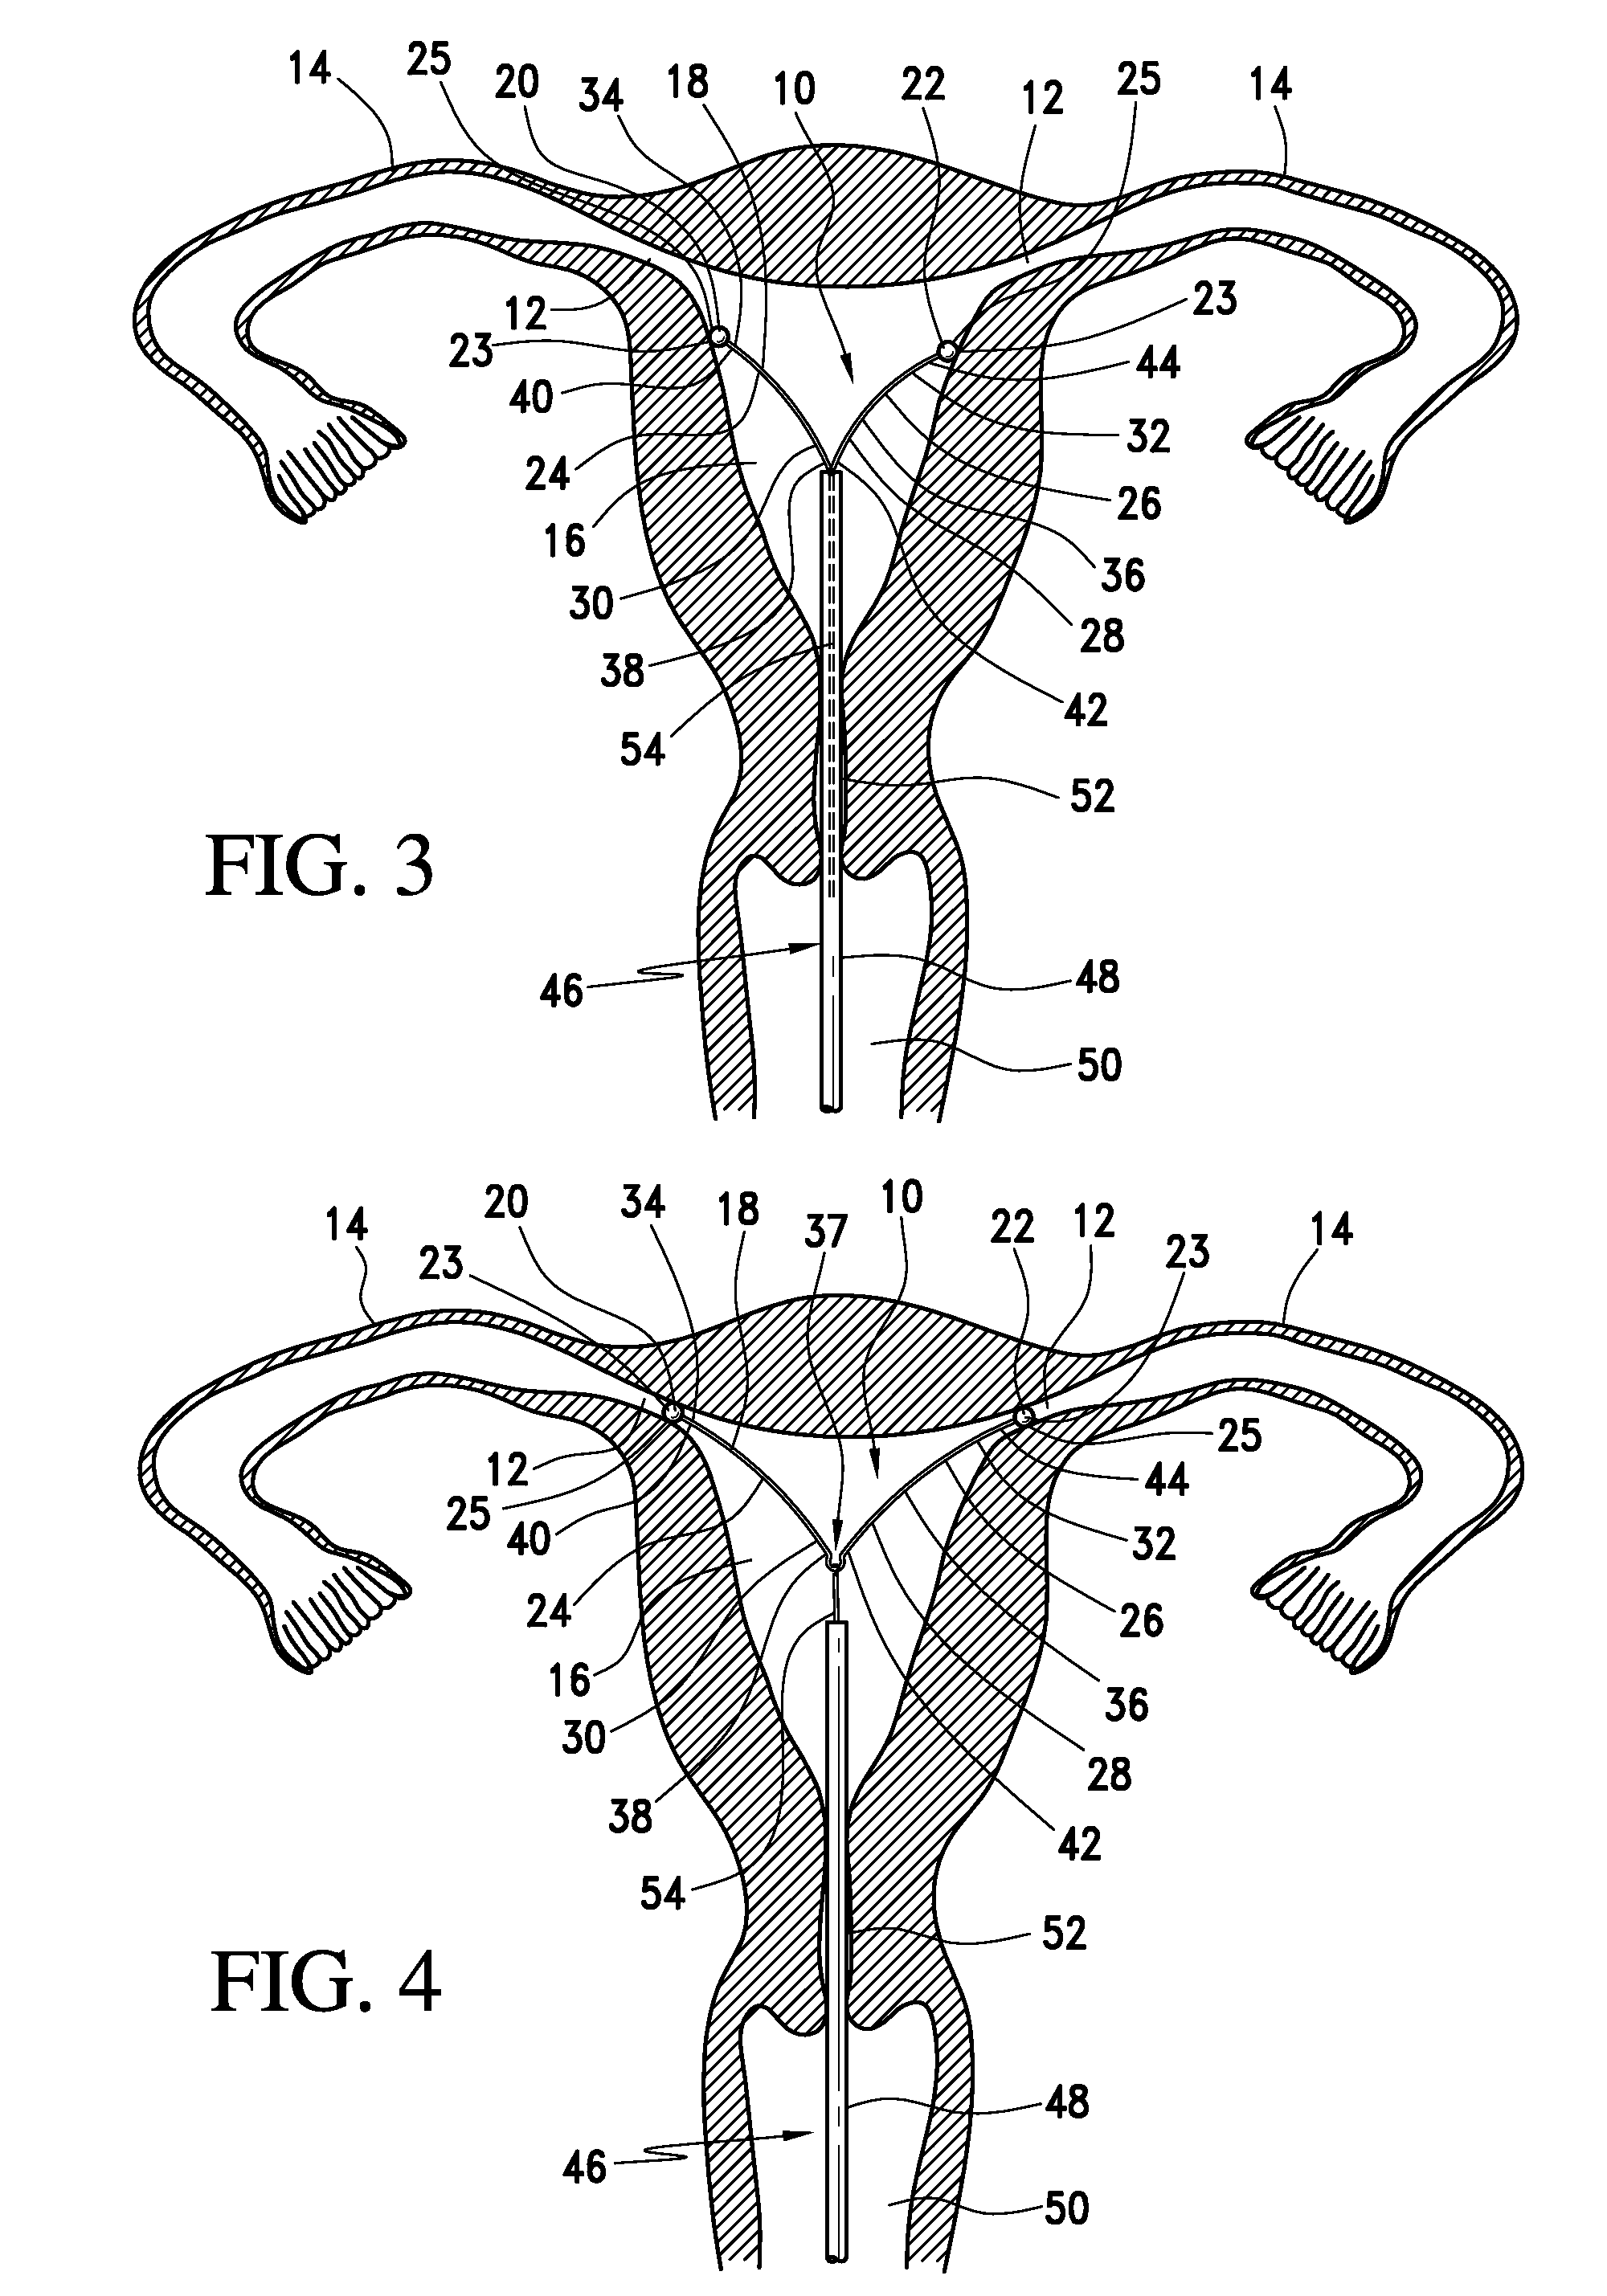 Intrauterine fallopian tube occlusion device